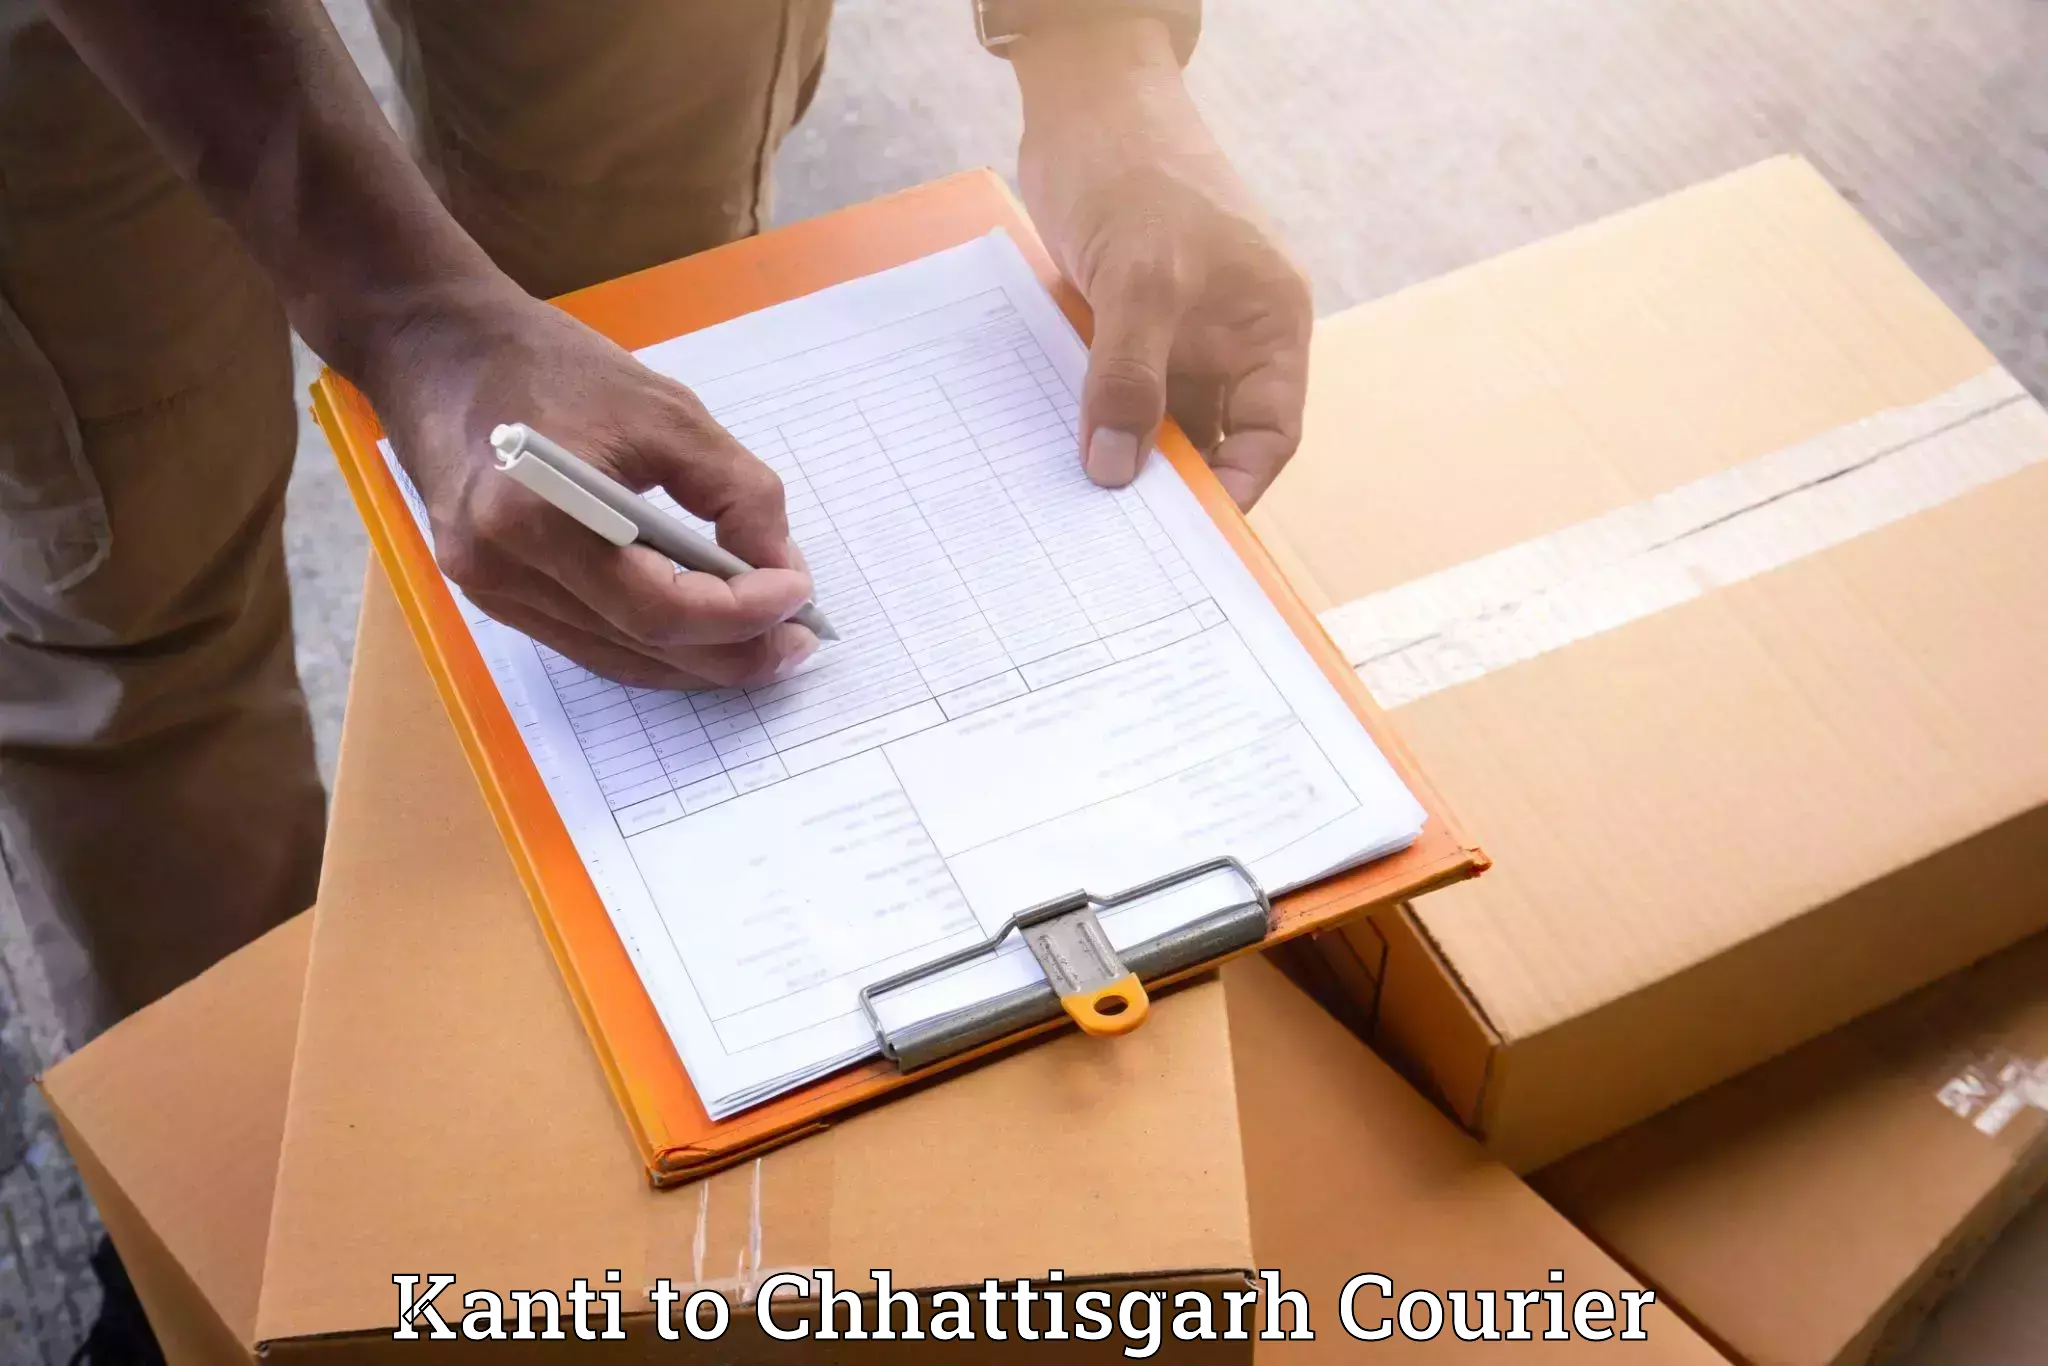 Professional furniture movers in Kanti to Bargidih